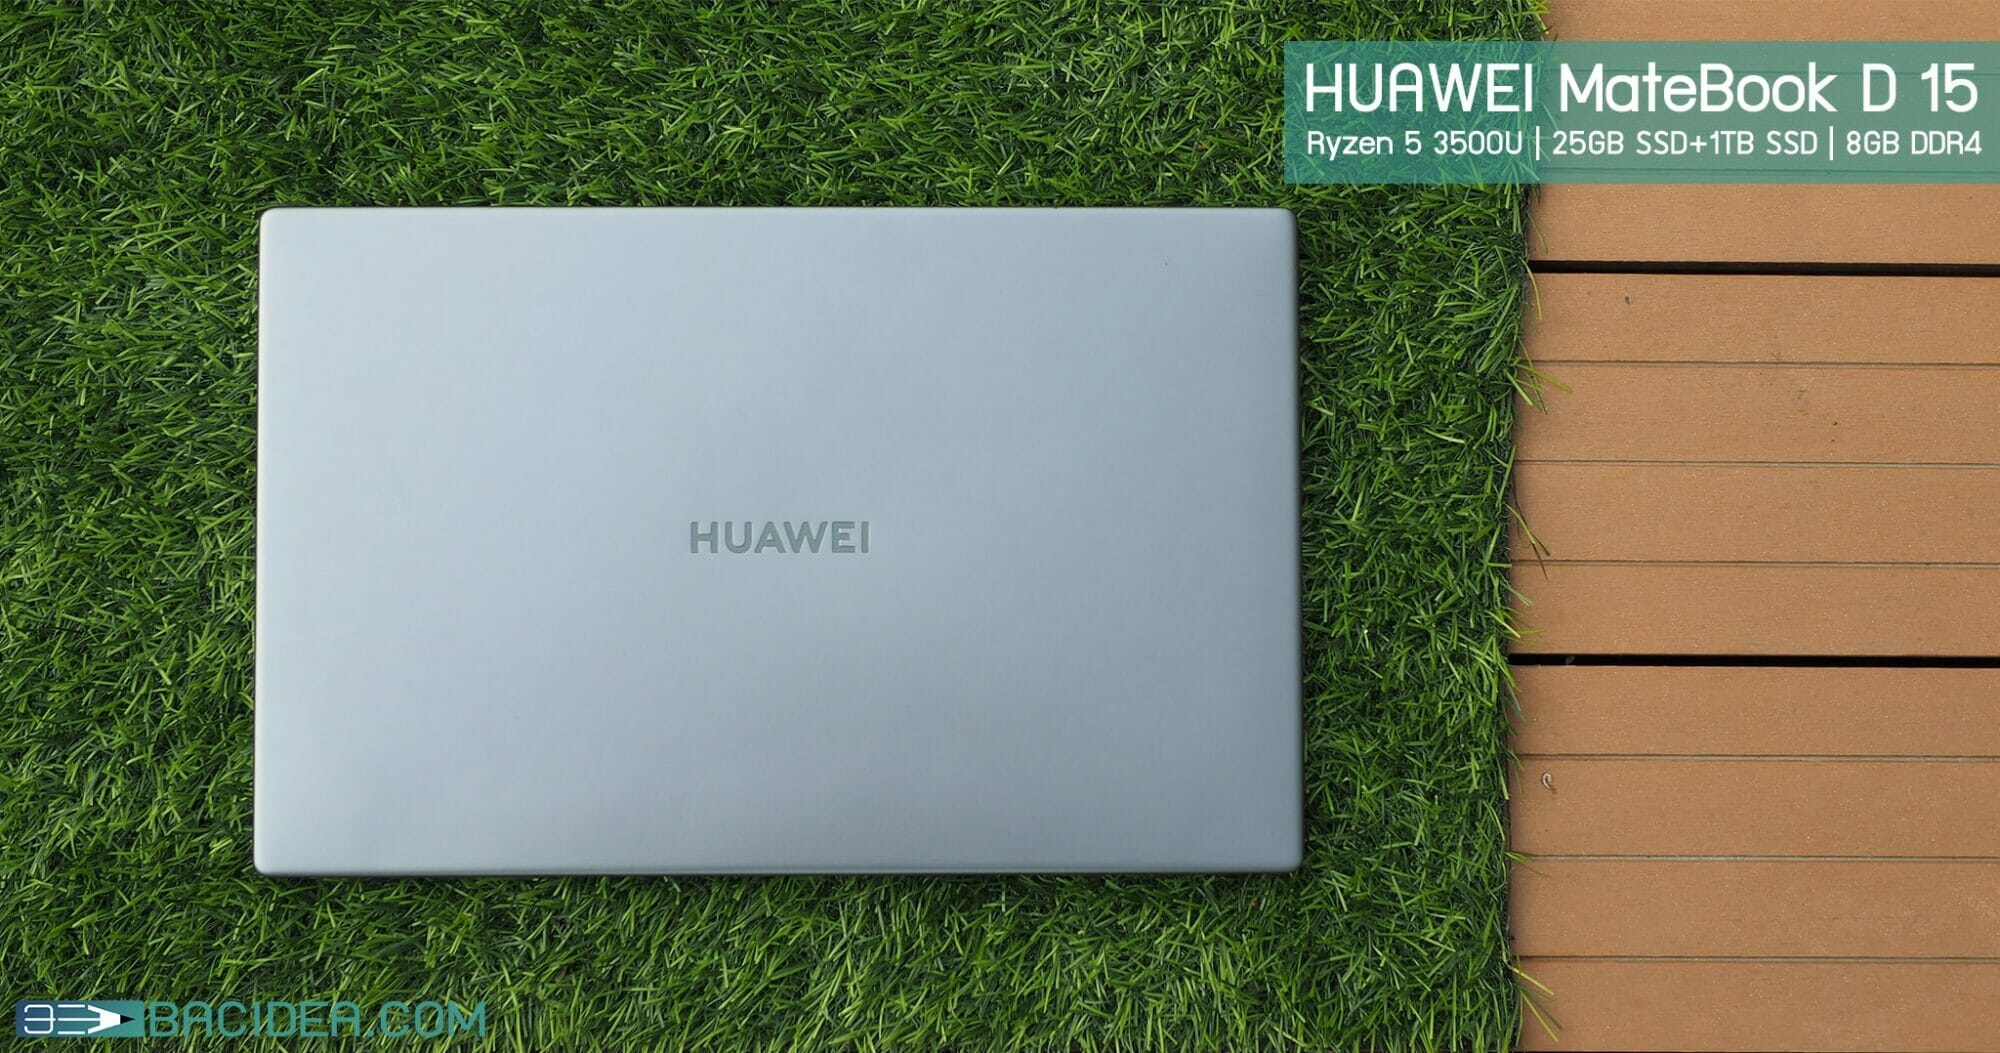 รีวิว HUAWEI MateBook D 15 | โน้ตบุ๊คสายทำงาน ออกแบบมาดี พร้อมฟีเจอร์ใช้งานร่วมกับมือถือ HUAWEI 1